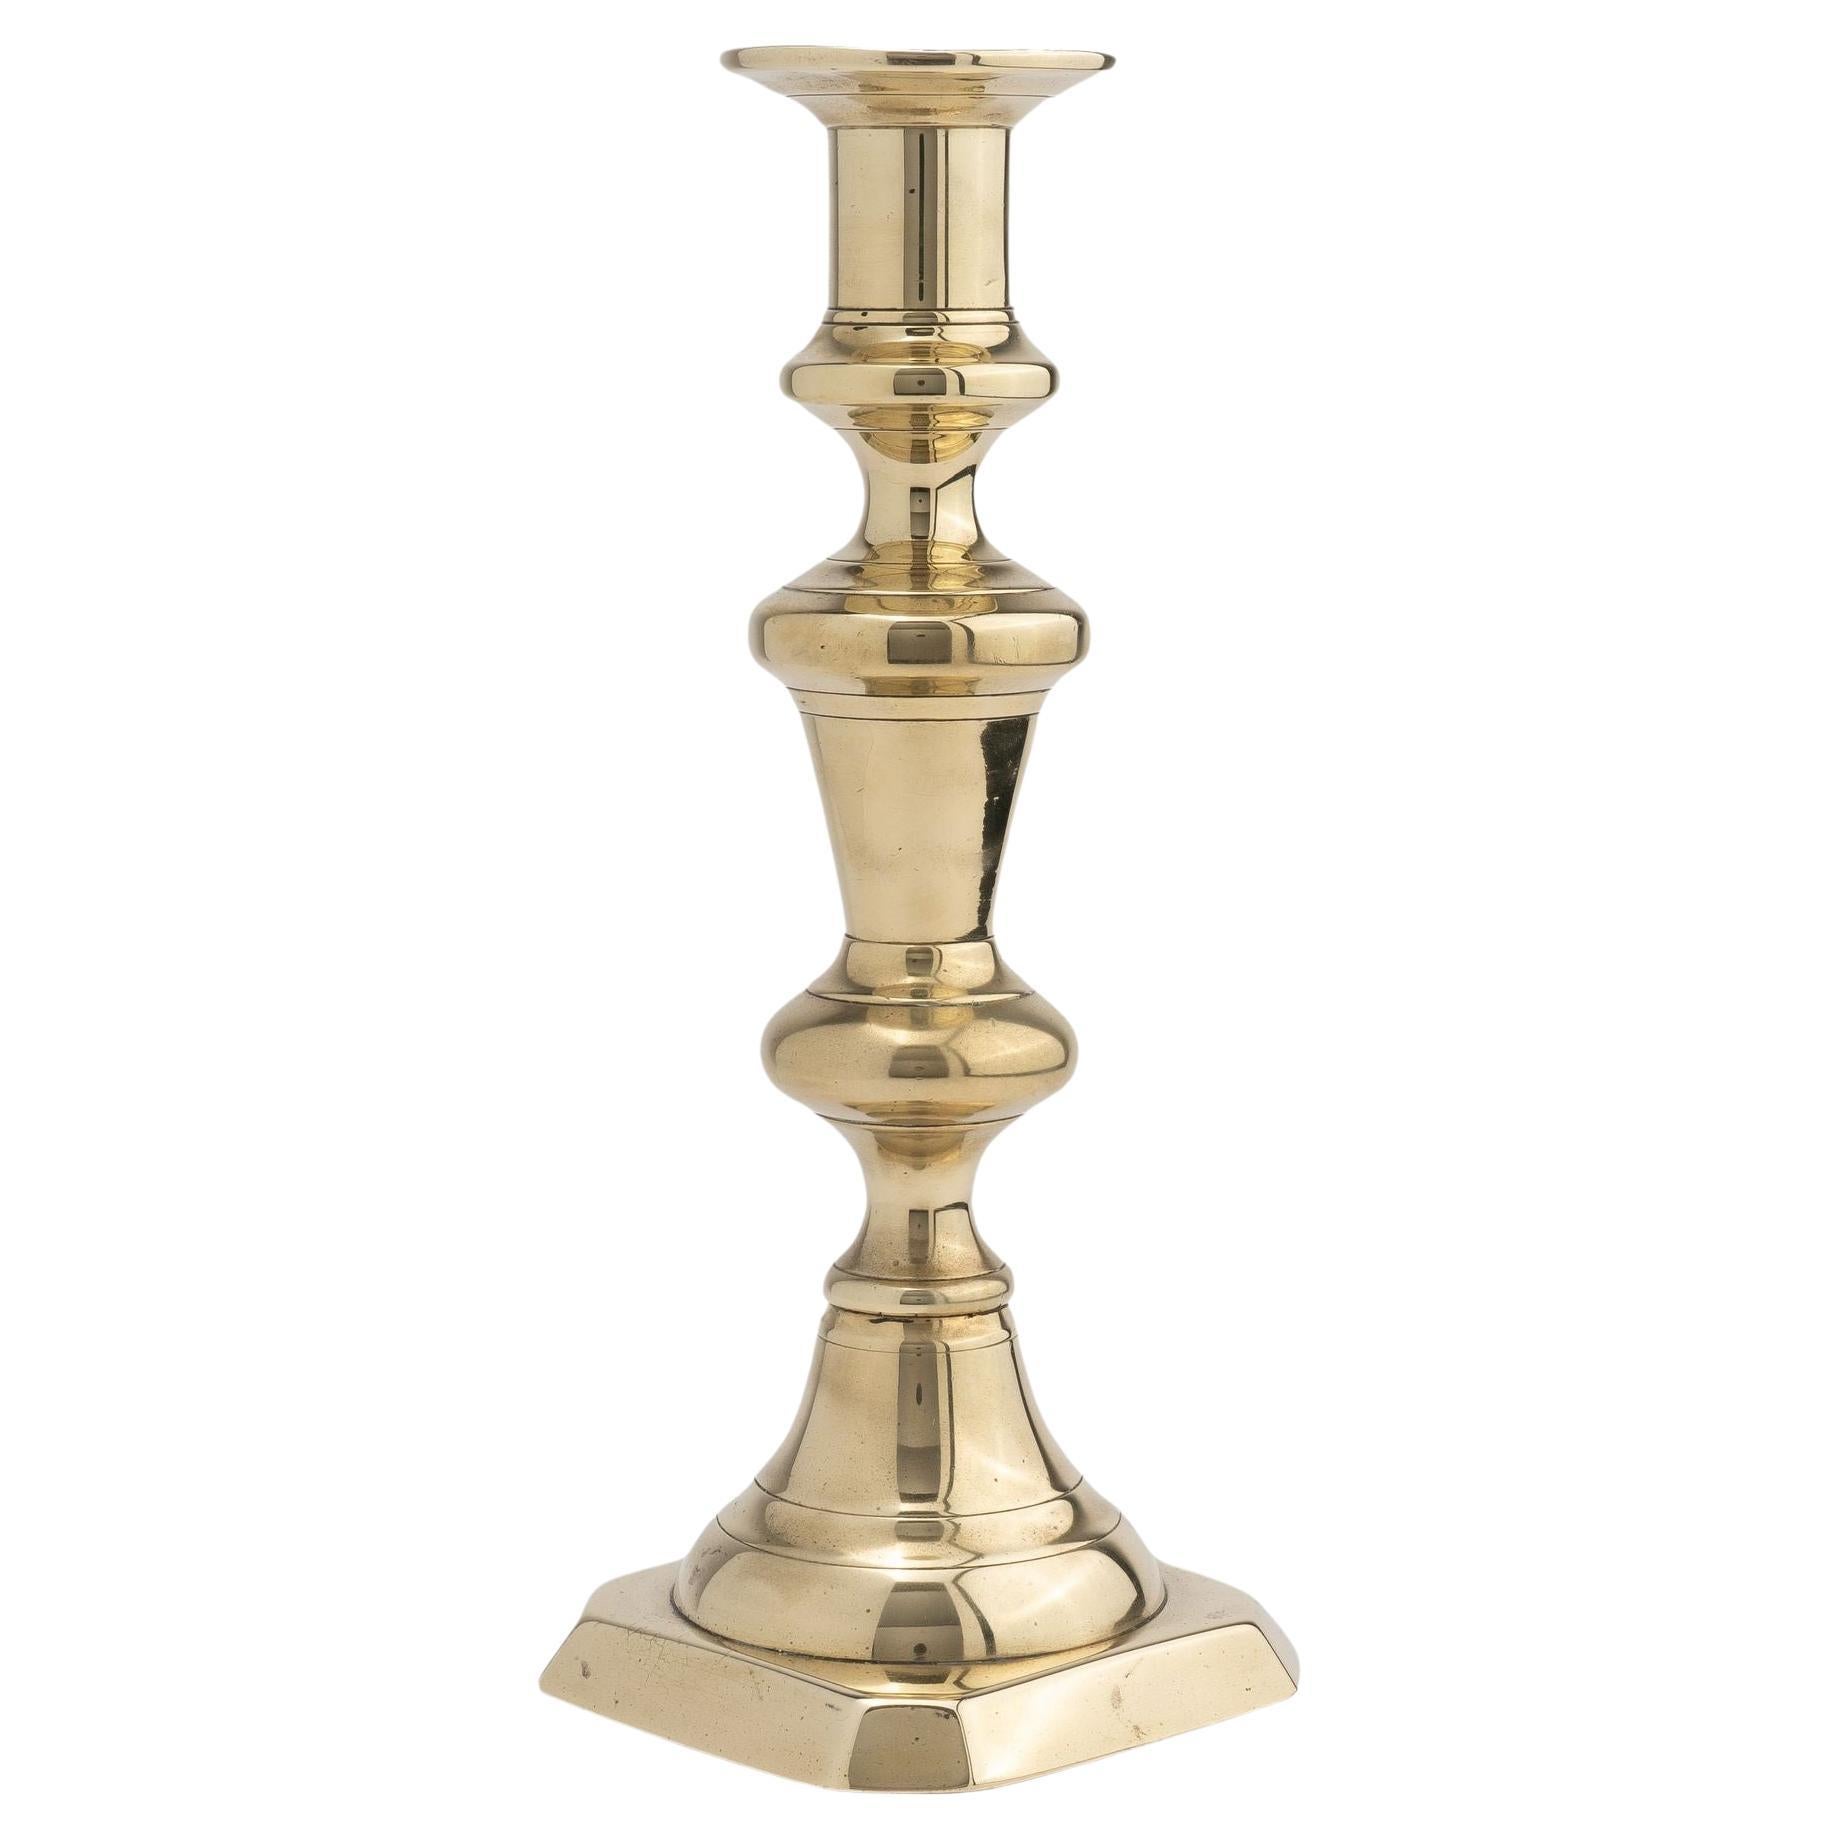 English cast brass candlestick, 1830